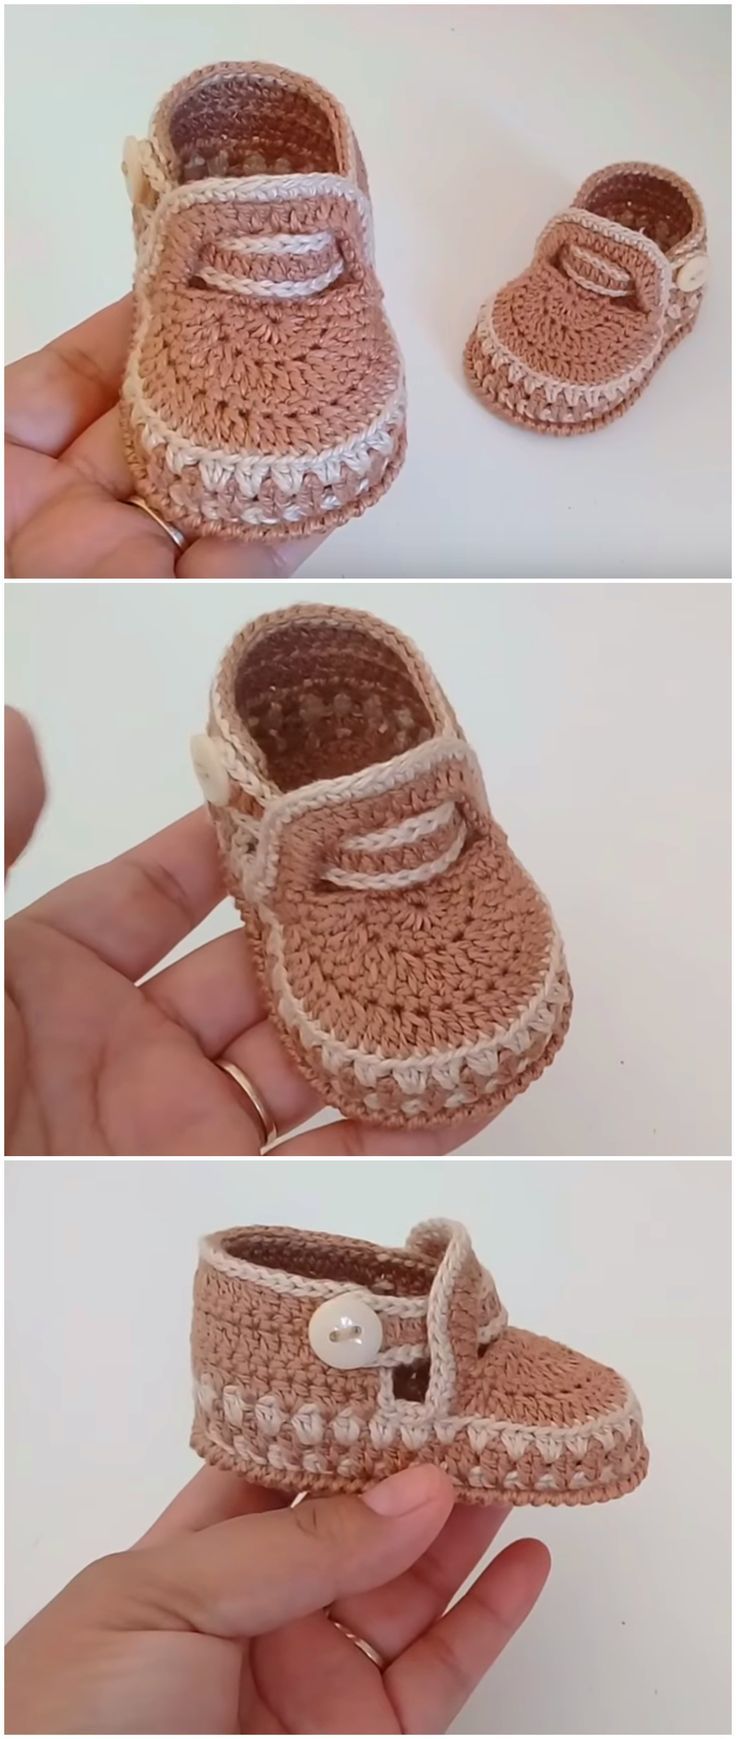 Crochet-Lovely-Baby-Shoes-Video-Tutorial.jpg